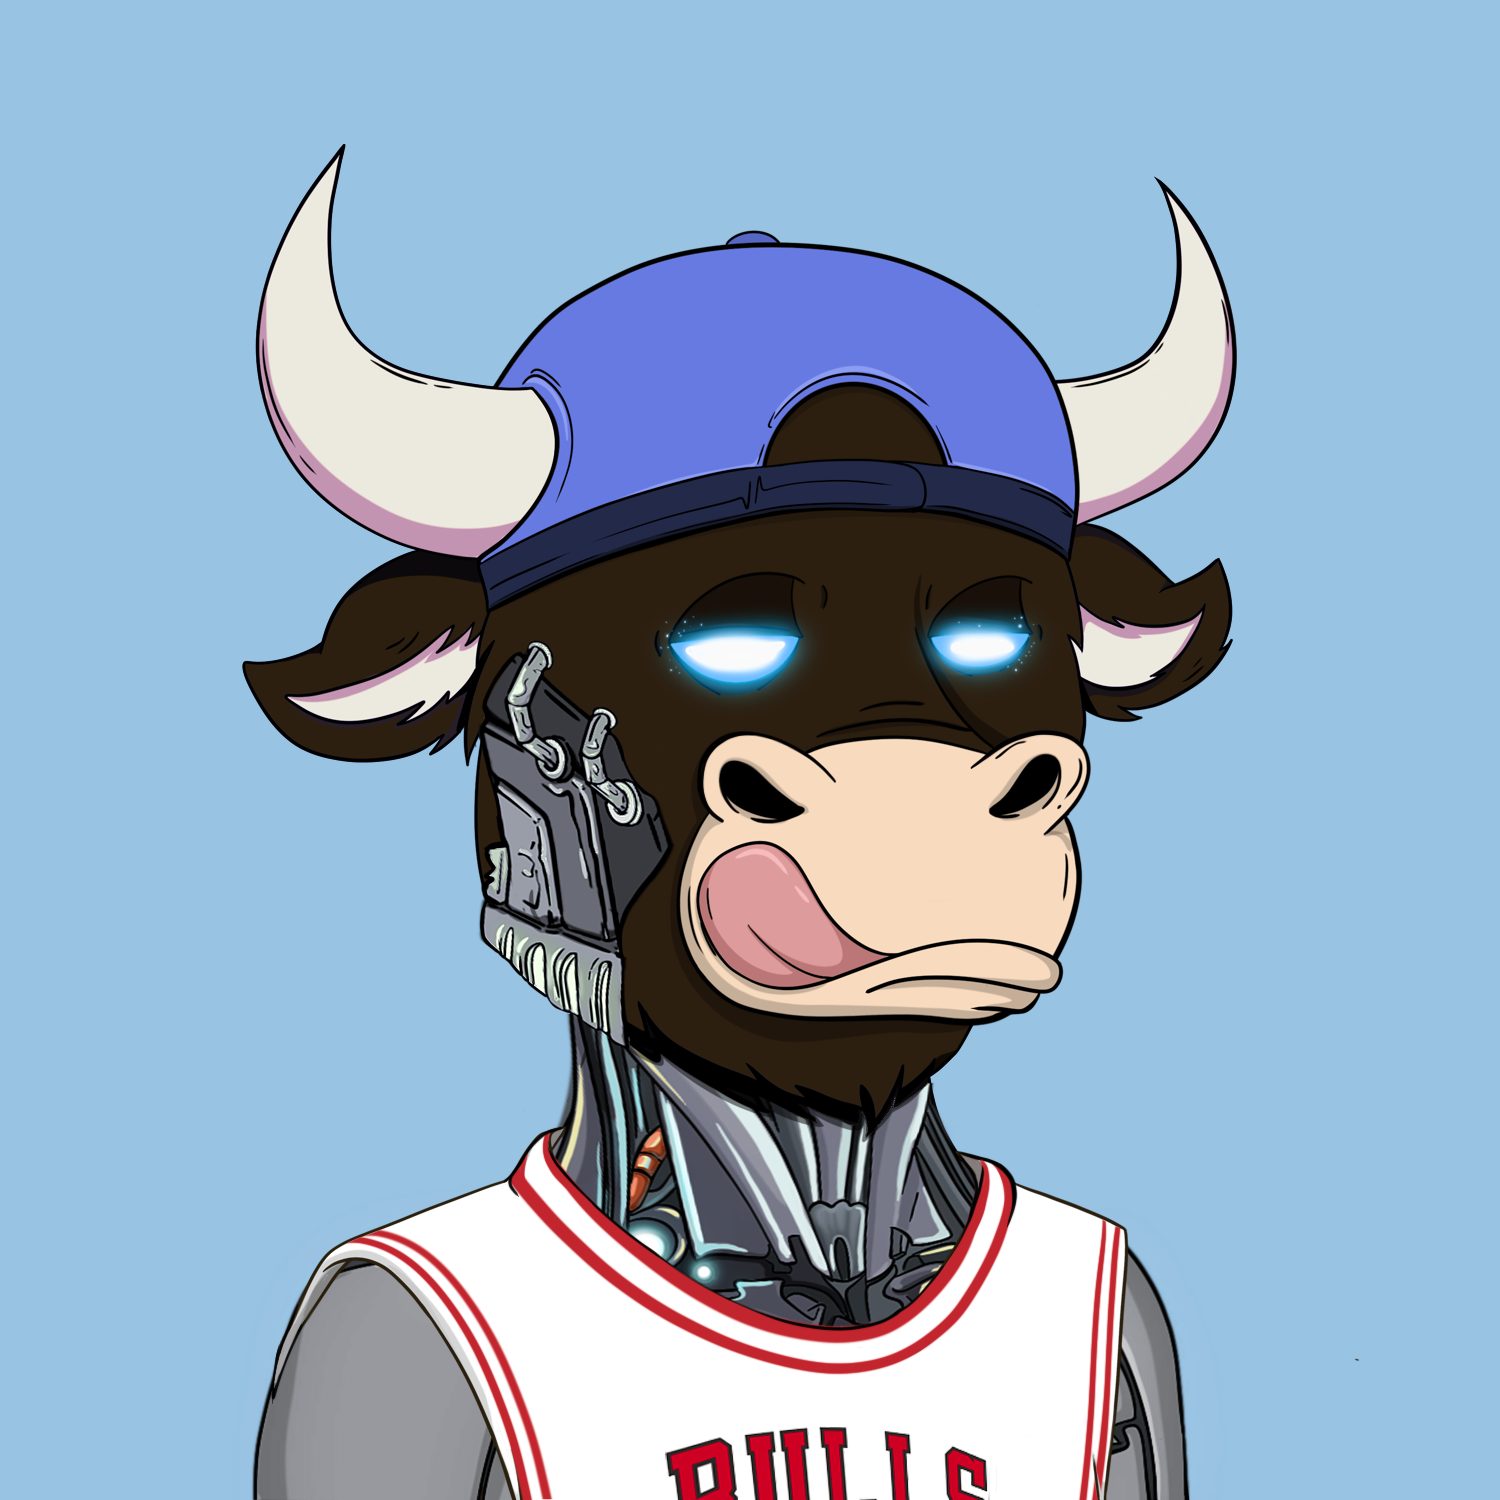 Okay Bulls #6132